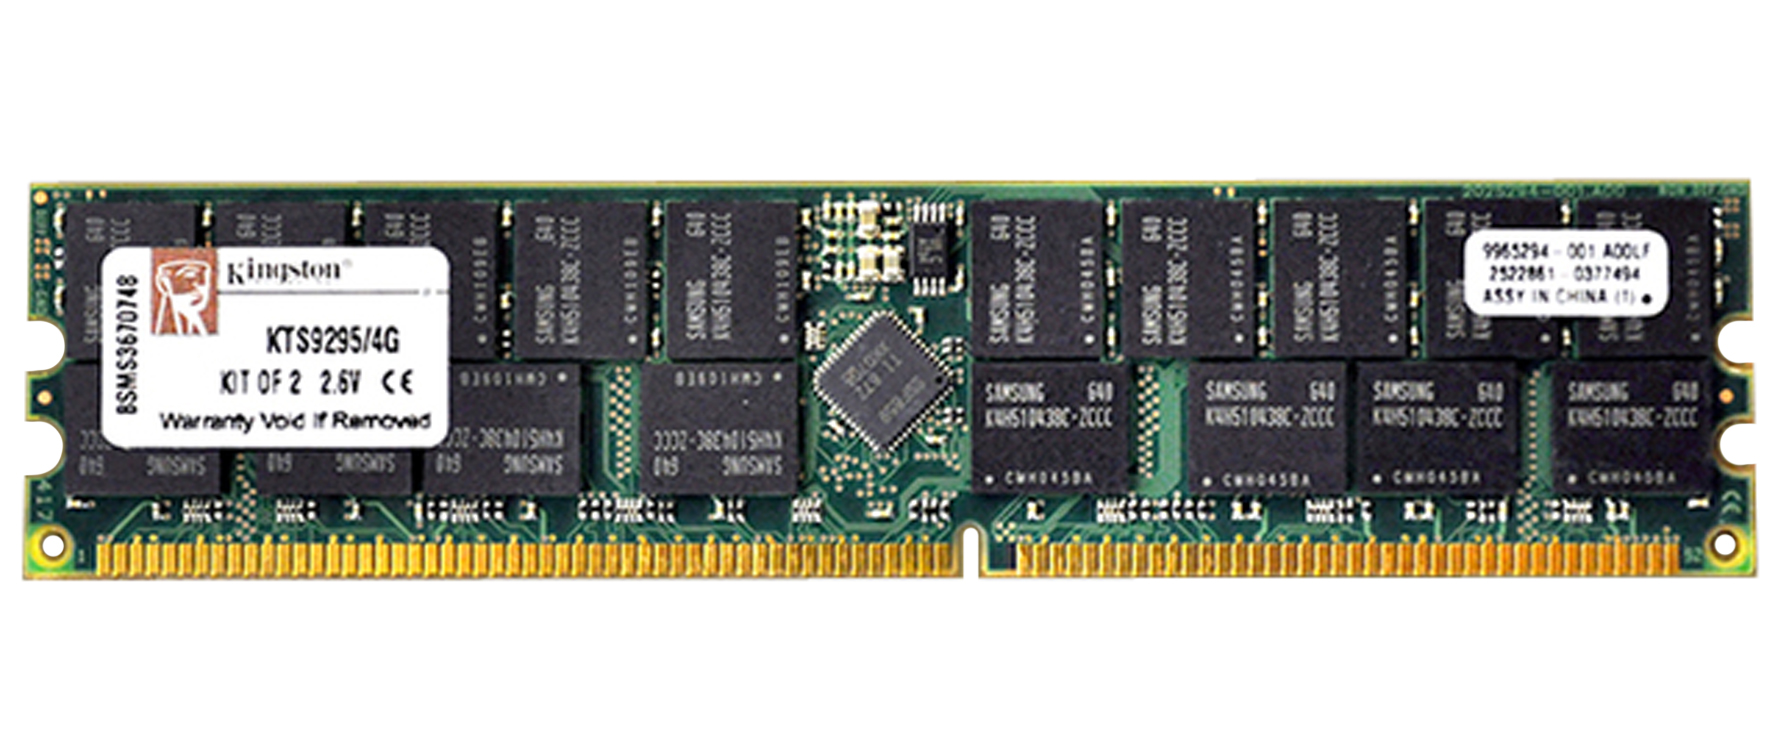 KTS9295/4G Kingston 4GB DDR1 PC3200 Memory